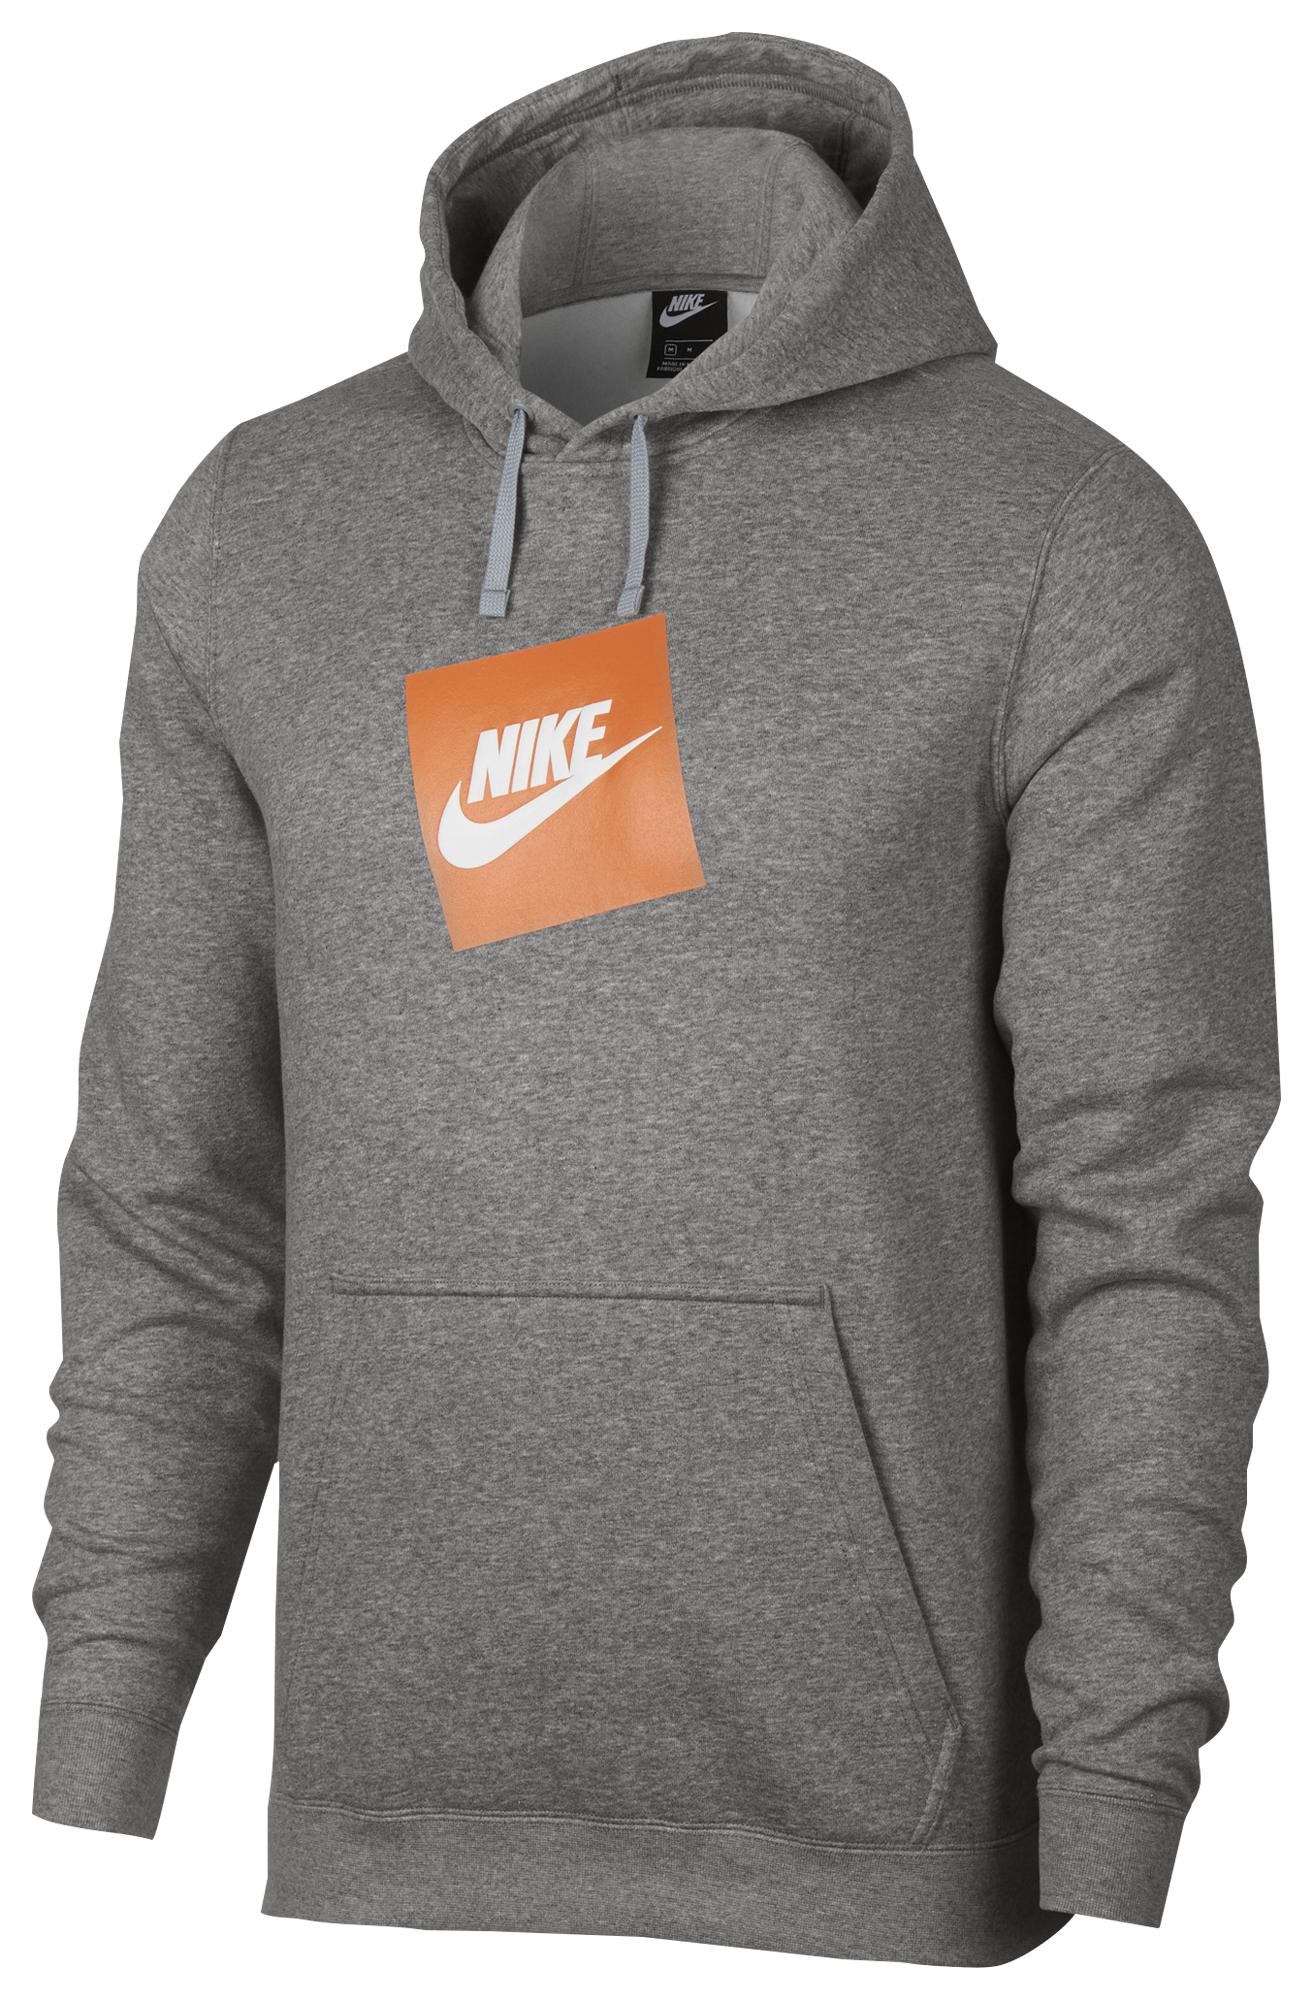 grey and orange nike hoodie